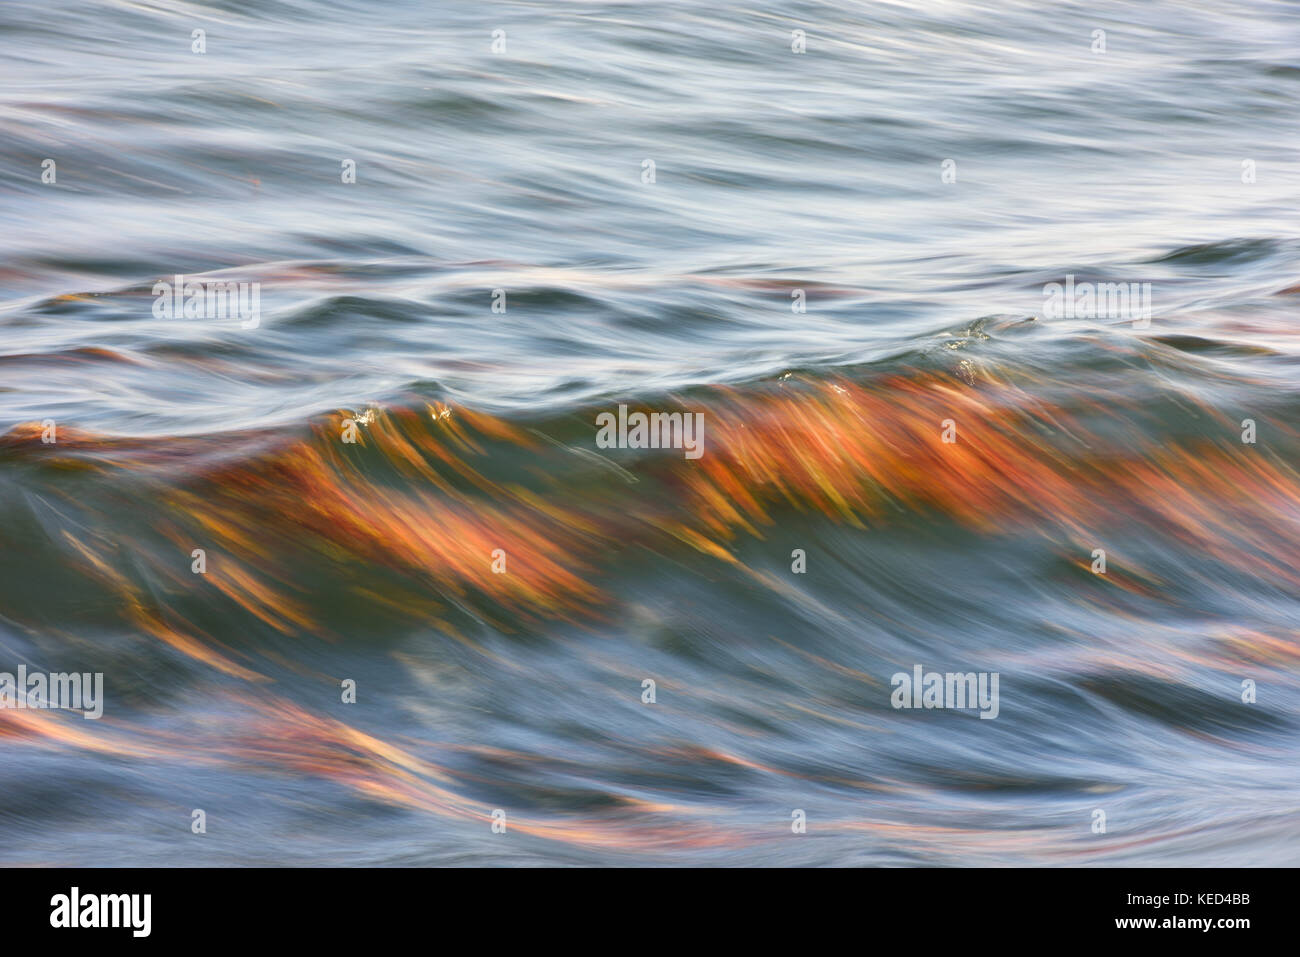 Feuilles colorées dérivant dans les vagues de la mer Baltique, Panning, Rügen, Mecklenburg-Poméranie occidentale, Allemagne Banque D'Images